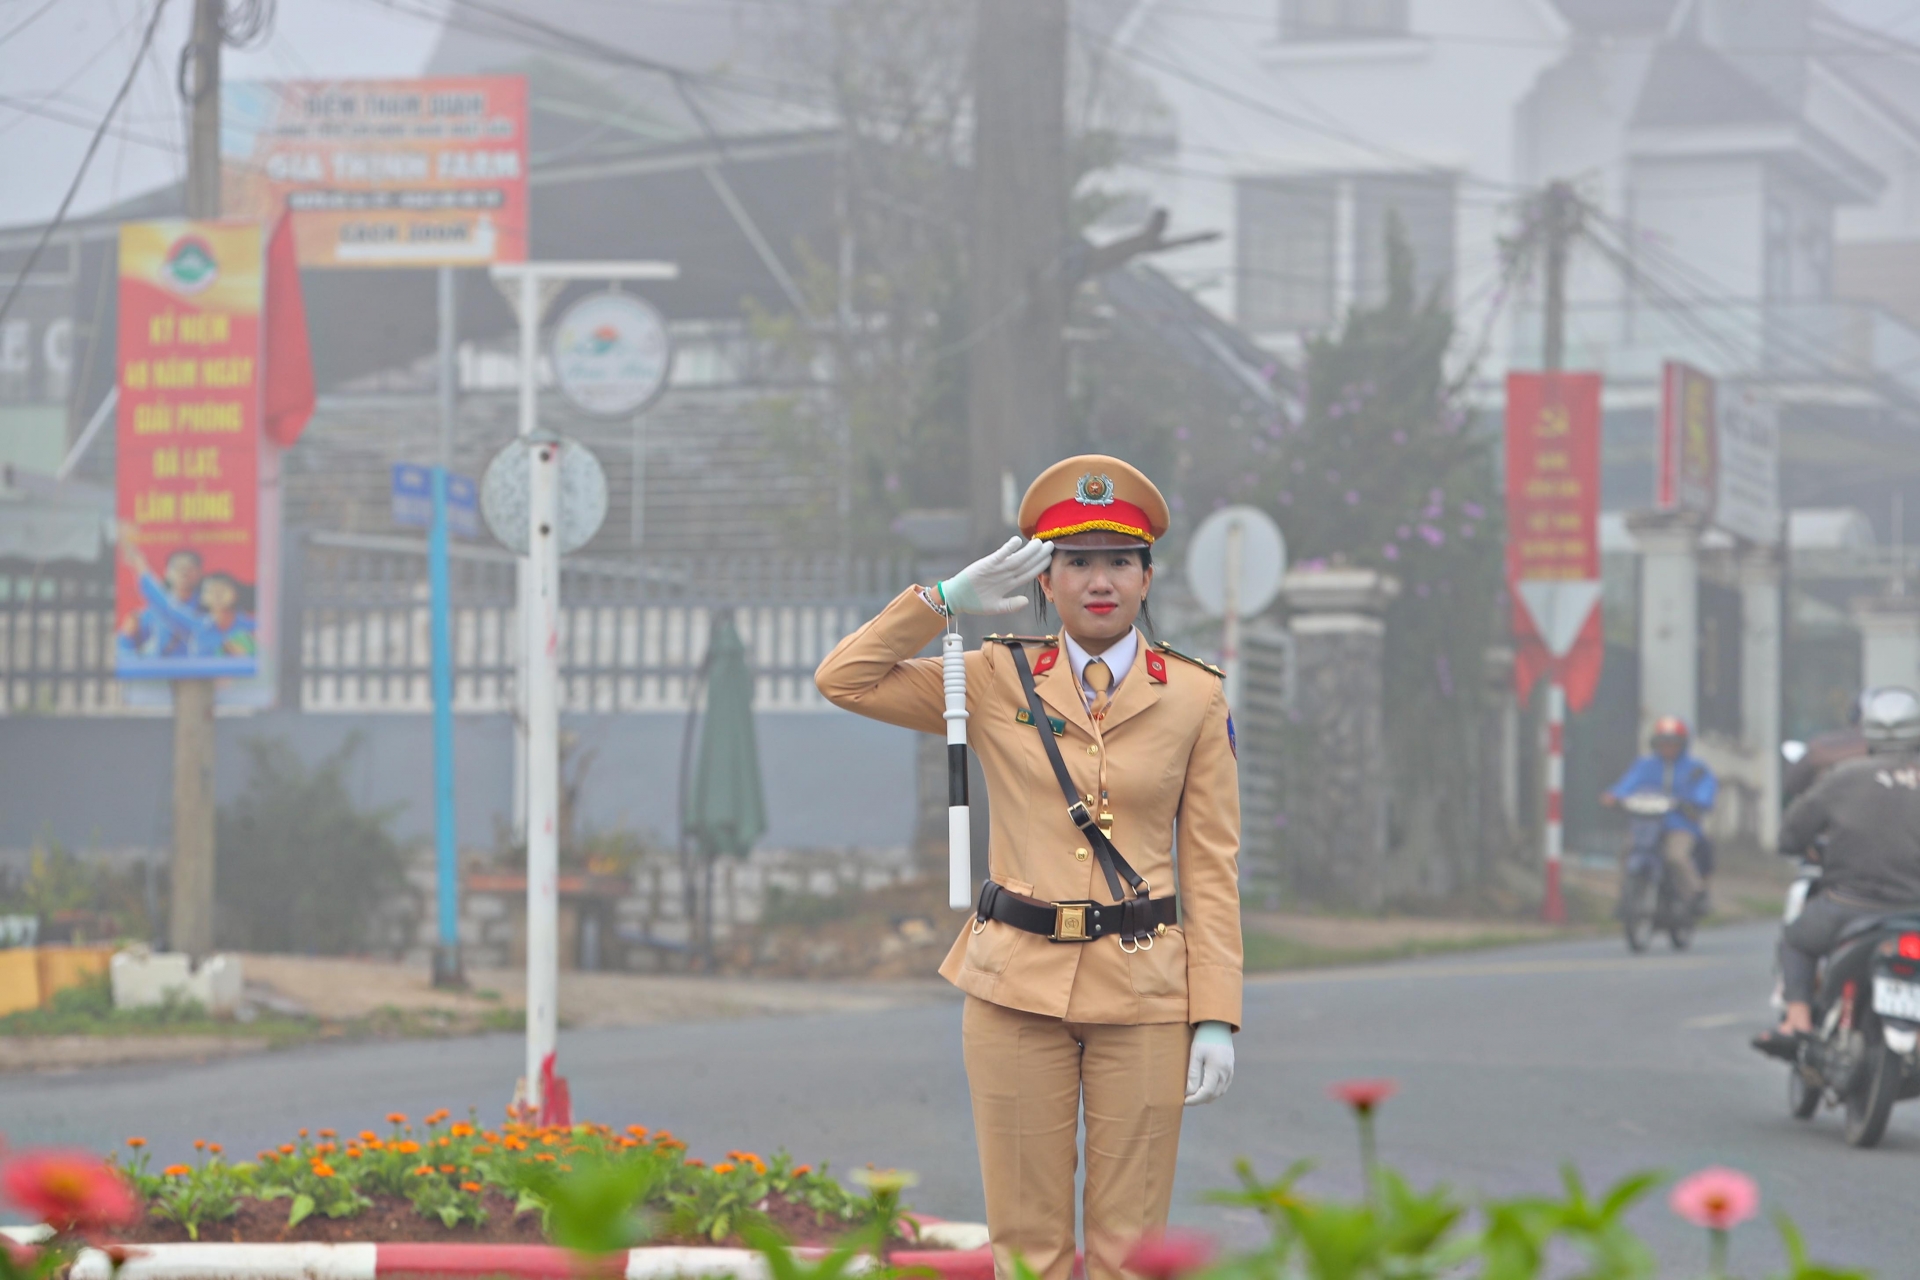 Với trang phục vàng, găng tay trắng cùng chiếc gậy chỉ huy giao thông, các nữ CSGT đã gây ấn tượng đối với nhiều người dân và du khách sáng nay
